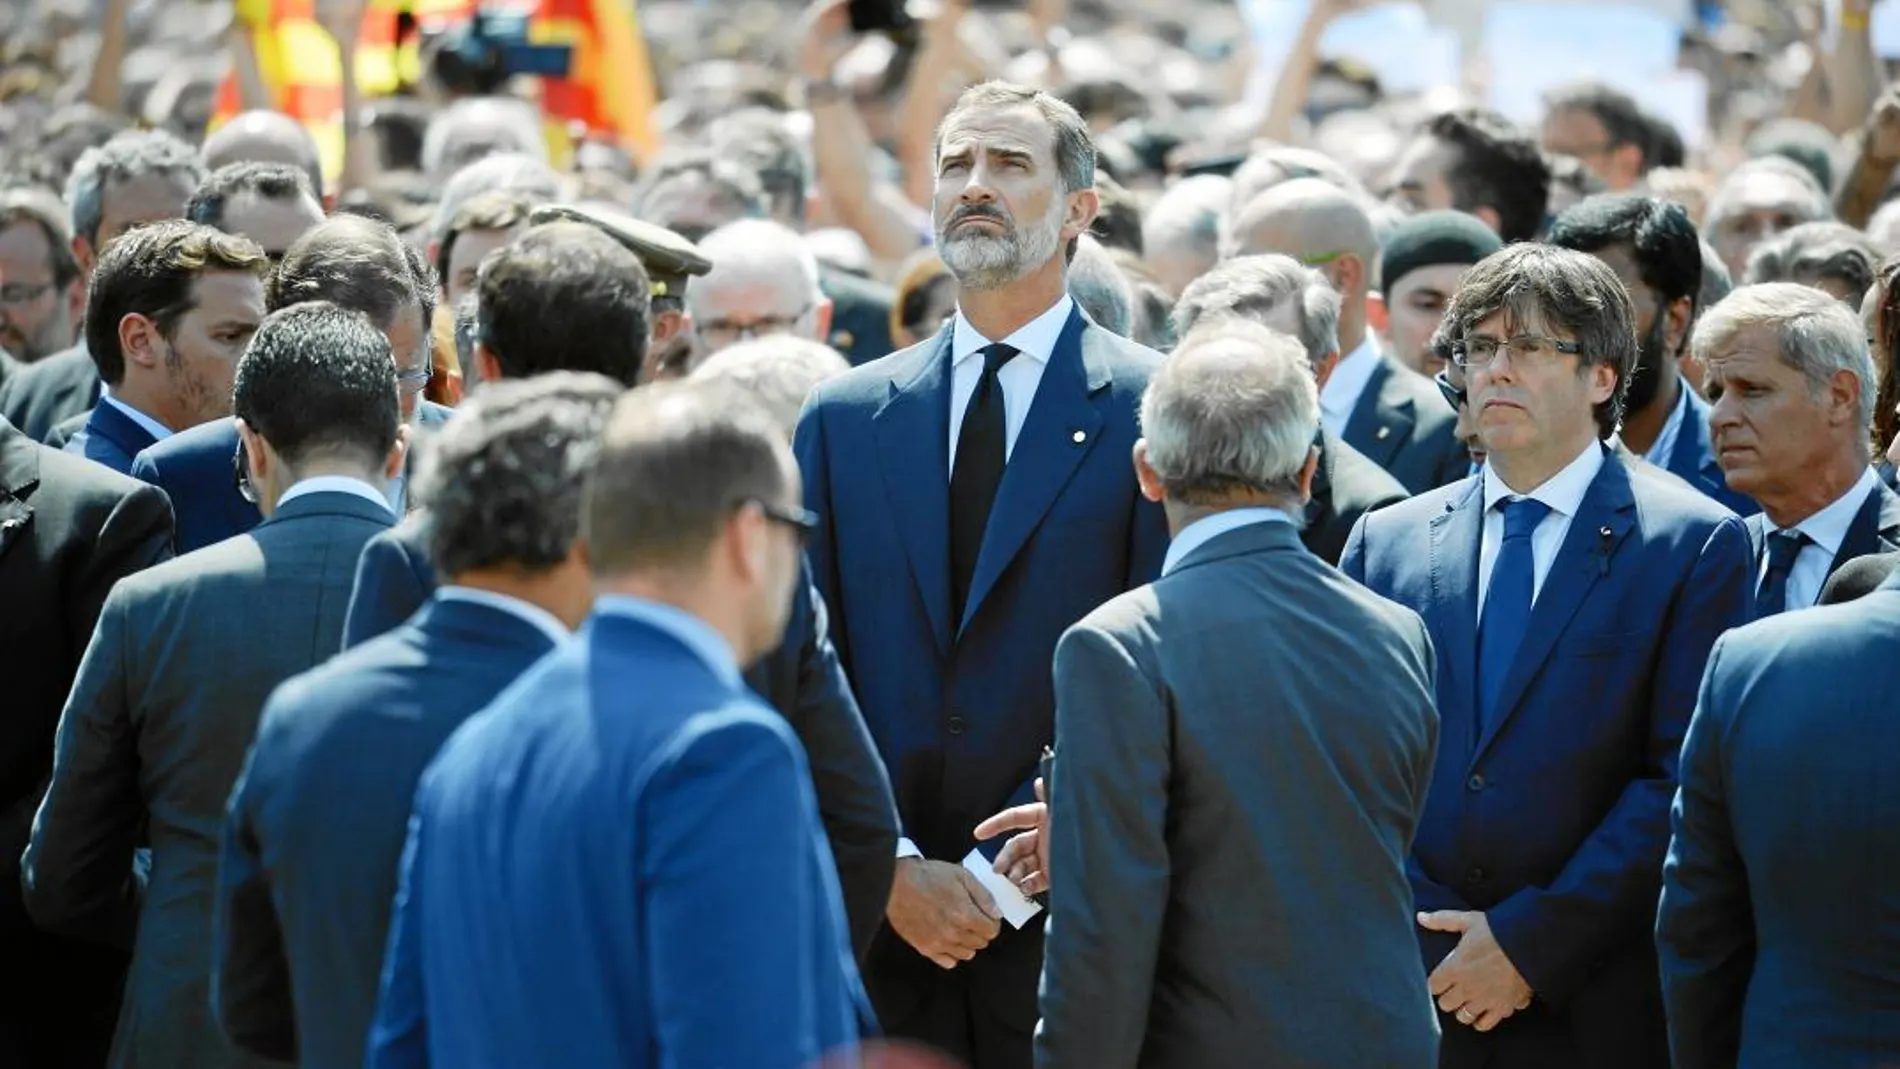 El Rey Felipe VI, junto al ex president Carles Puigdemont durante los actos en memoria de las víctimas de Las Ramblas y Cambrils en agosto de 2017/Shooting